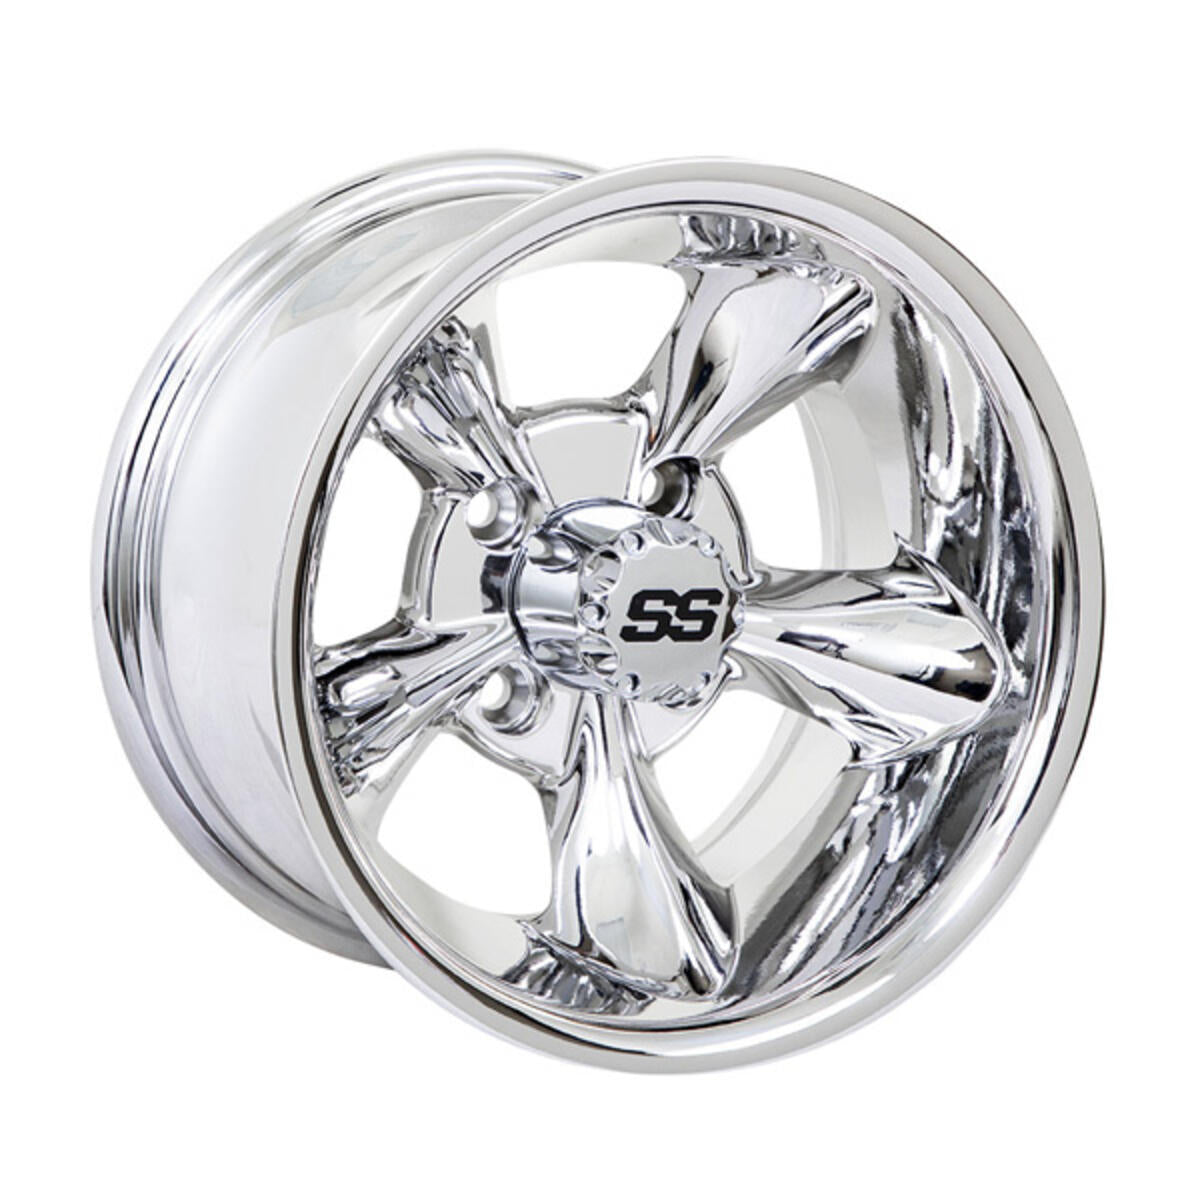 12"7 GTW Godfather Wheel - Chrome 19-240